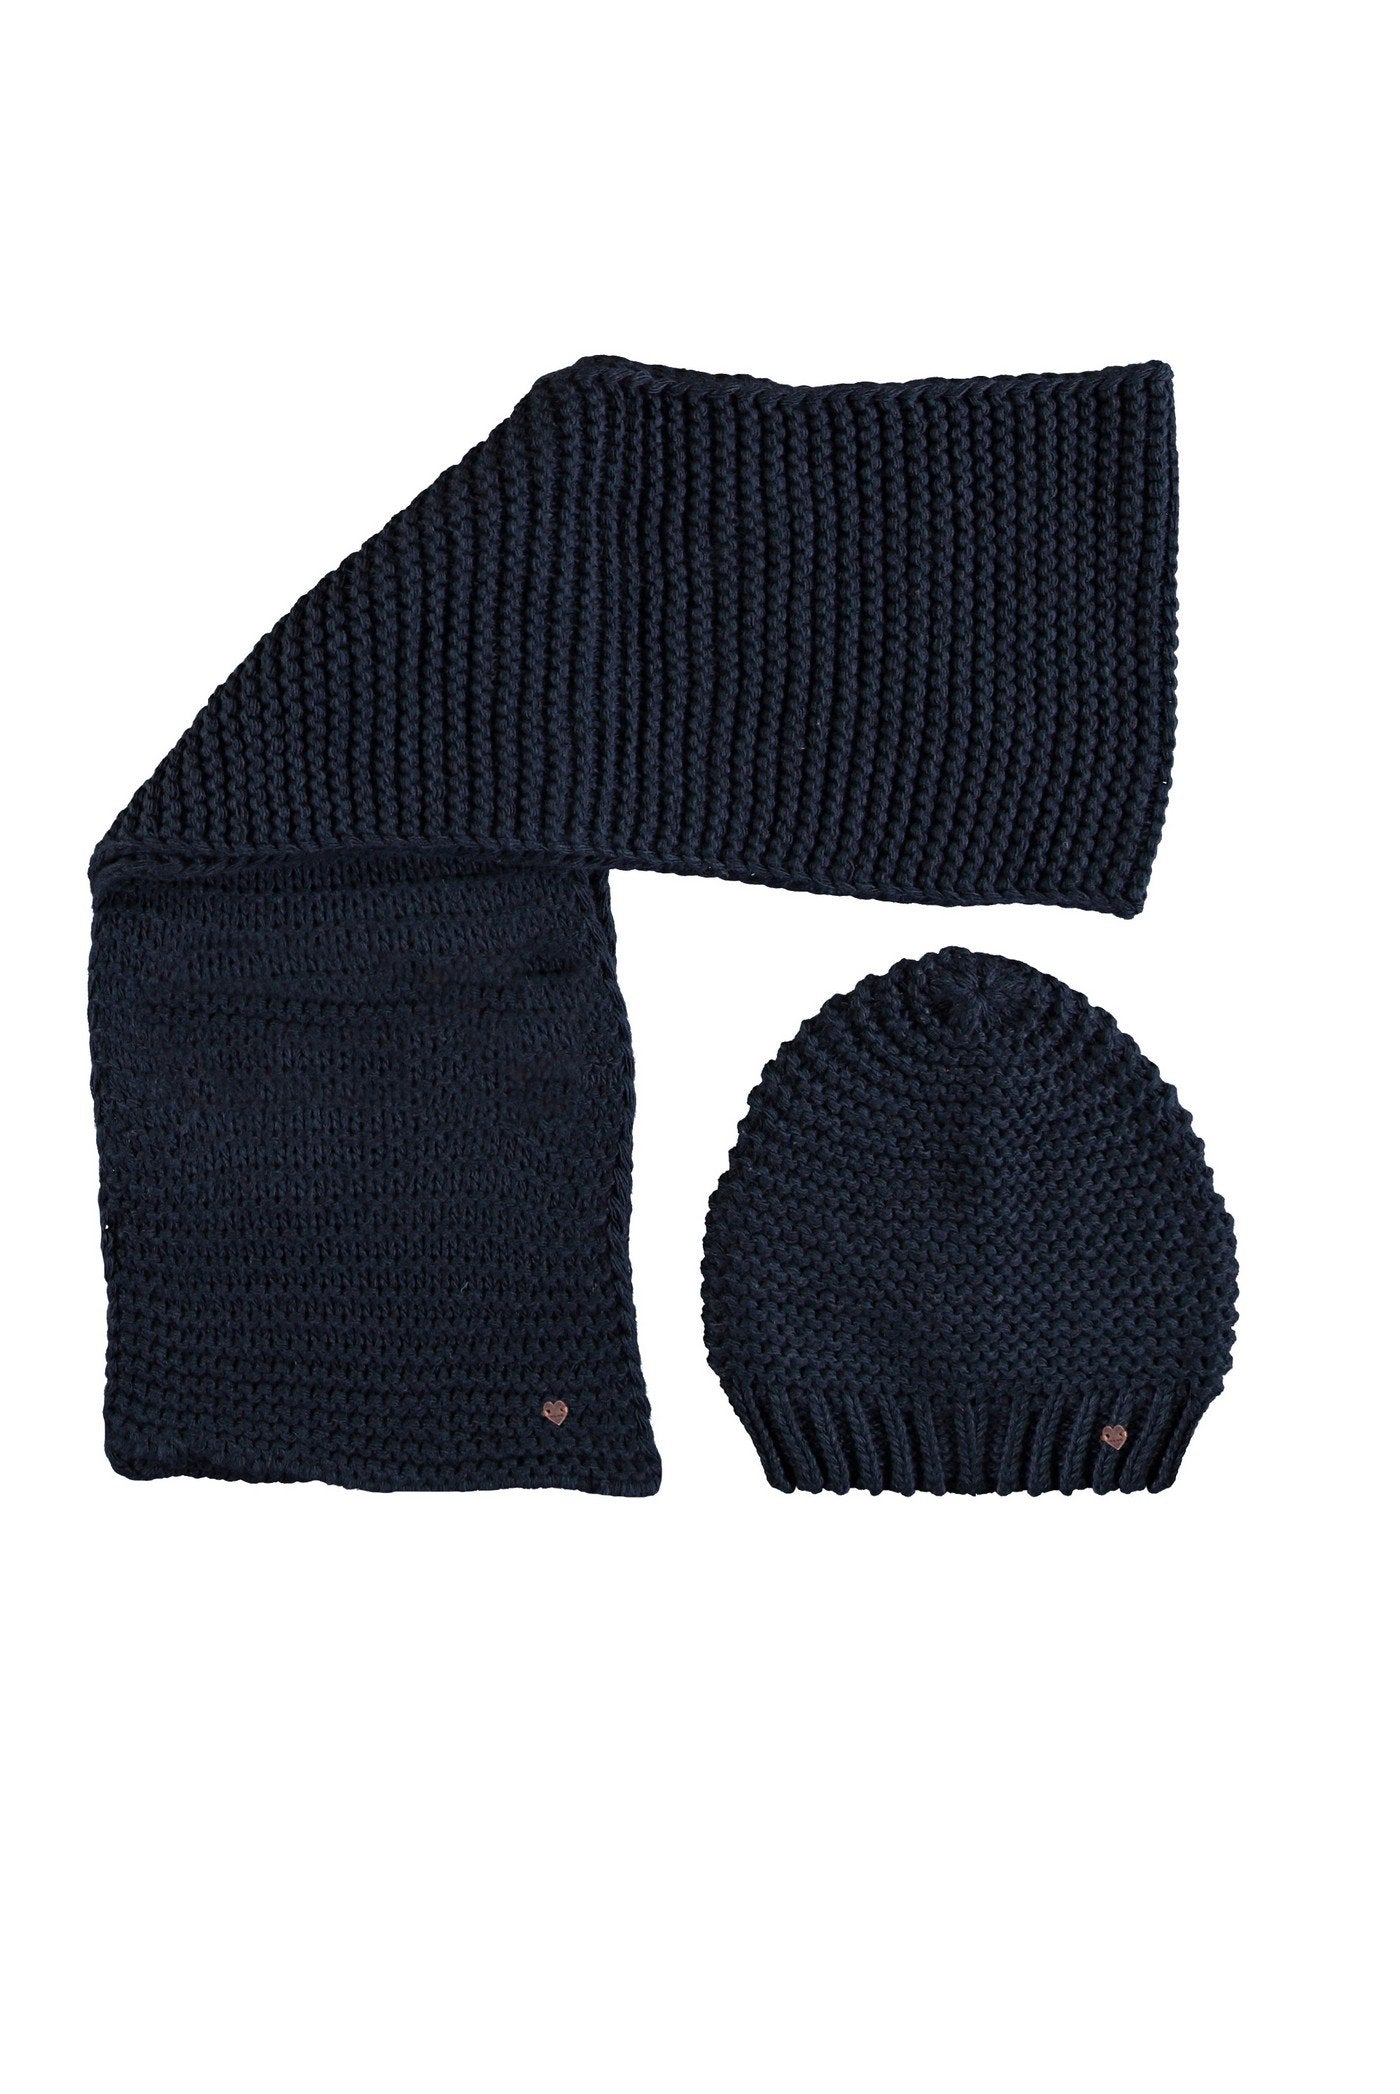 Meisjes Rai knitted scarf and hat set van NoNo in de kleur Navy Blazer in maat 92-104.